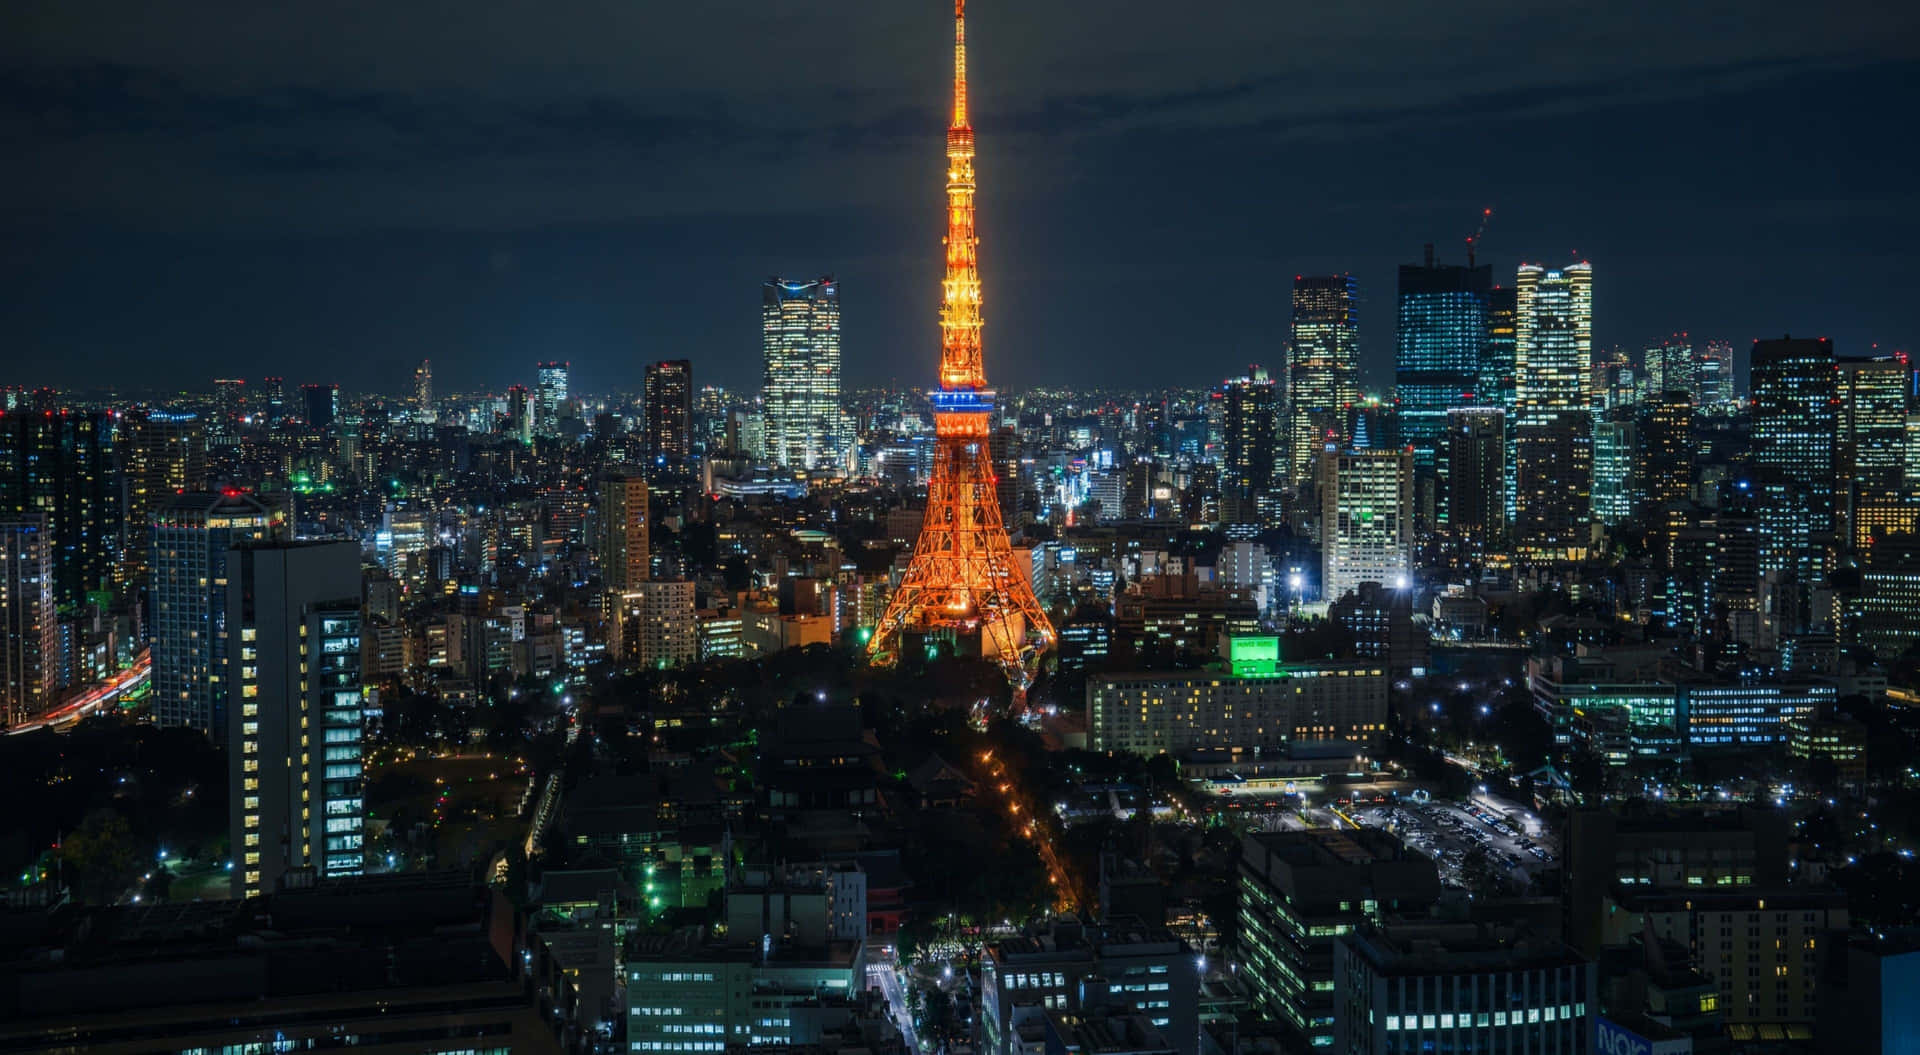 Tokyotower Bei Nacht.